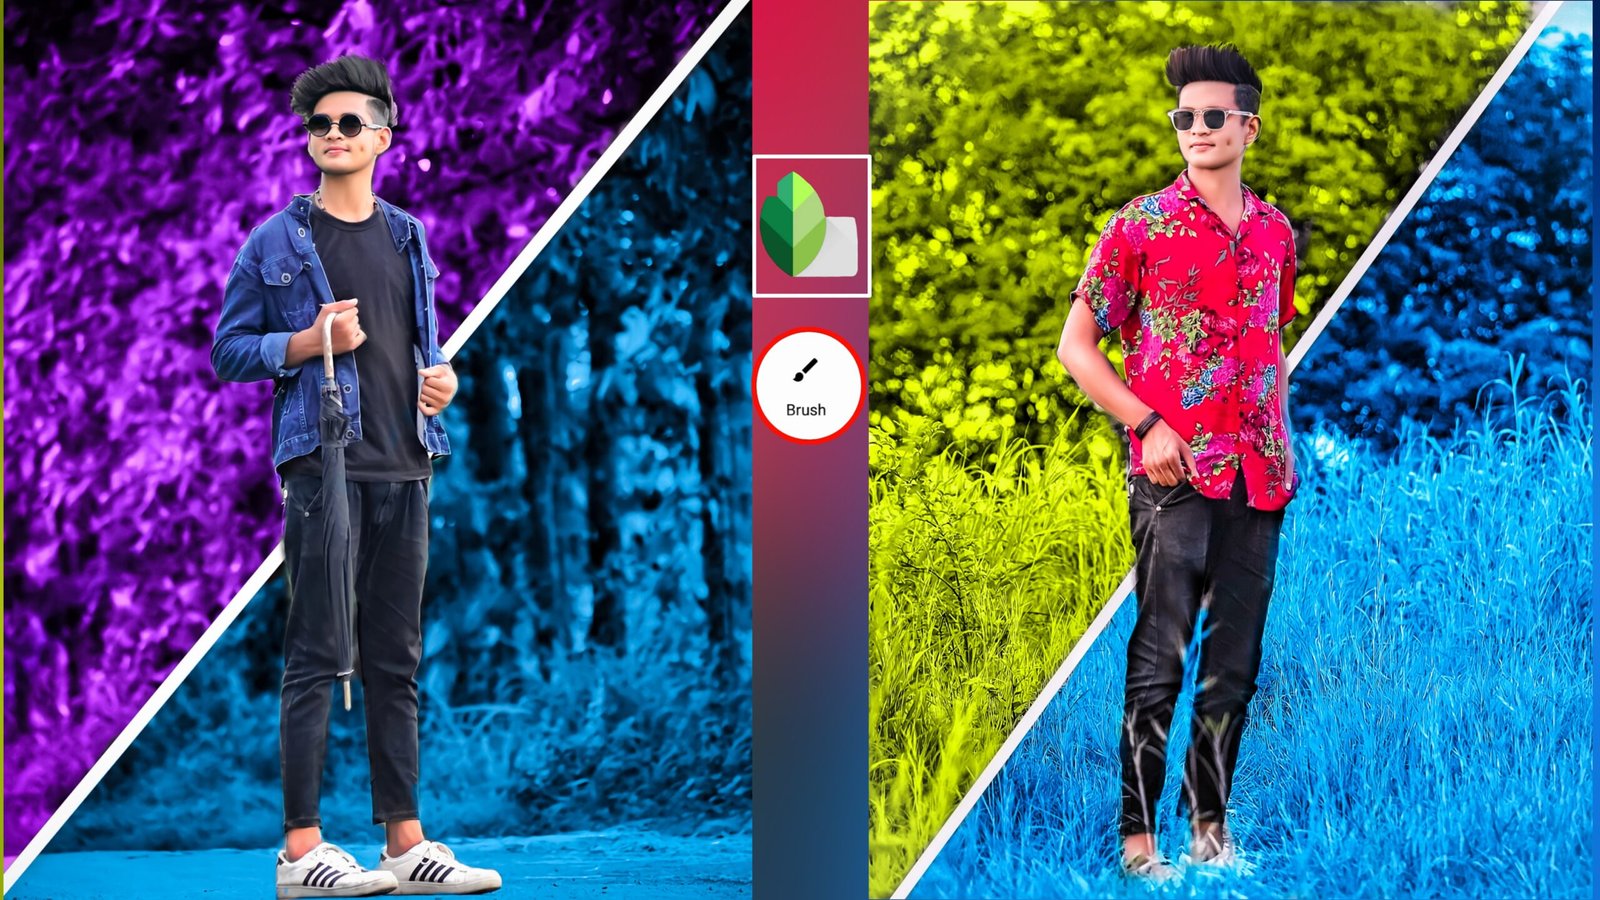 Snapseed Creative Photo Editing mang đến cho bạn những trải nghiệm chỉnh sửa ảnh tuyệt vời nhất. Tùy biến màu nền và các yếu tố khác để tạo nên những tác phẩm thật sáng tạo. Xem ngay video hướng dẫn Snapseed Background Color để khai thác tối đa tiềm năng trong tay của bạn.